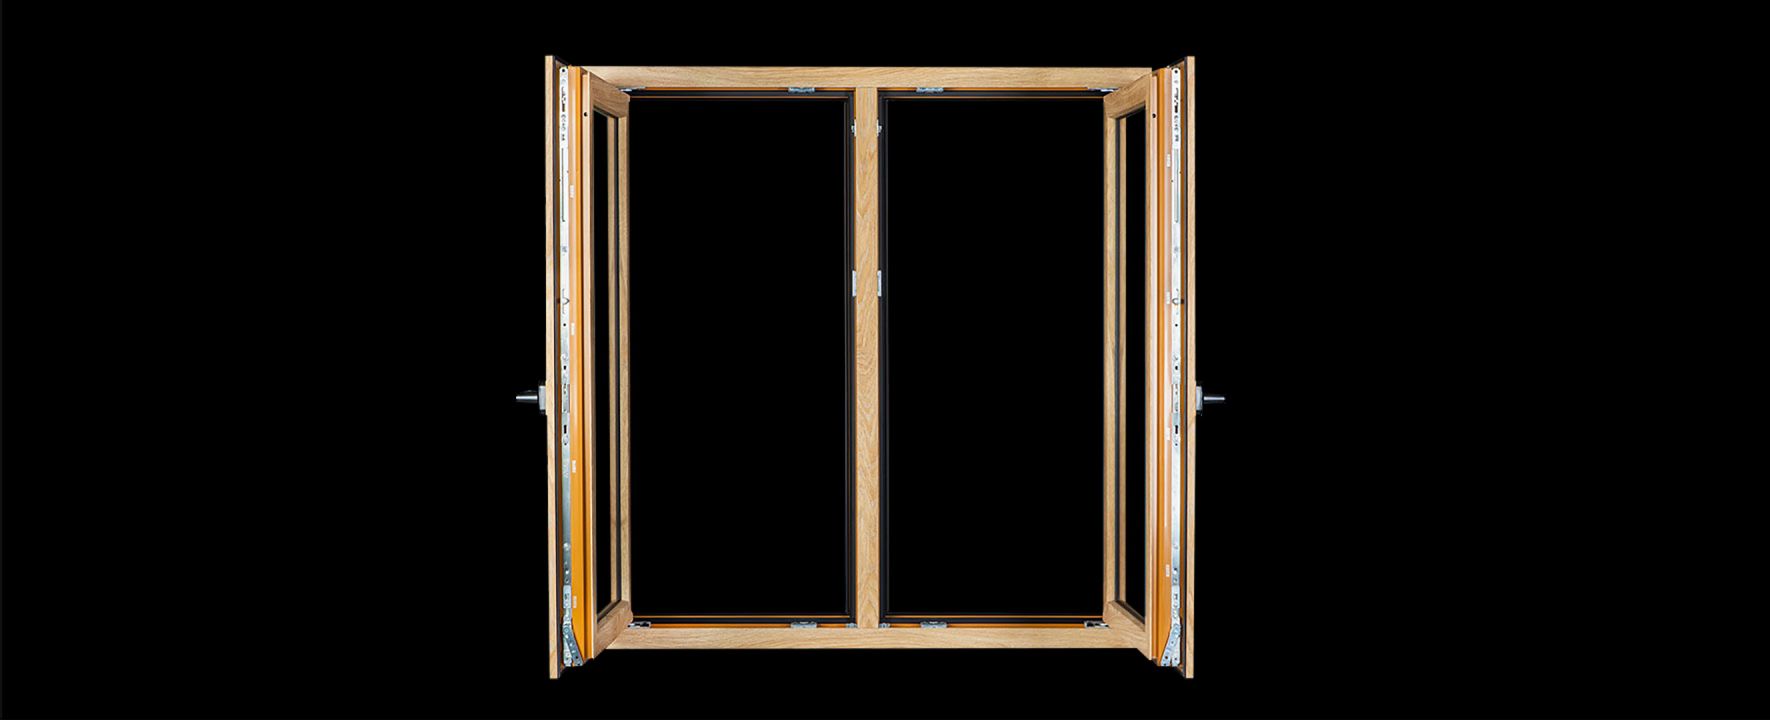 Czym są okna hybrydowe i pod jakim względem różnią się od tradycyjnych okien PVC?